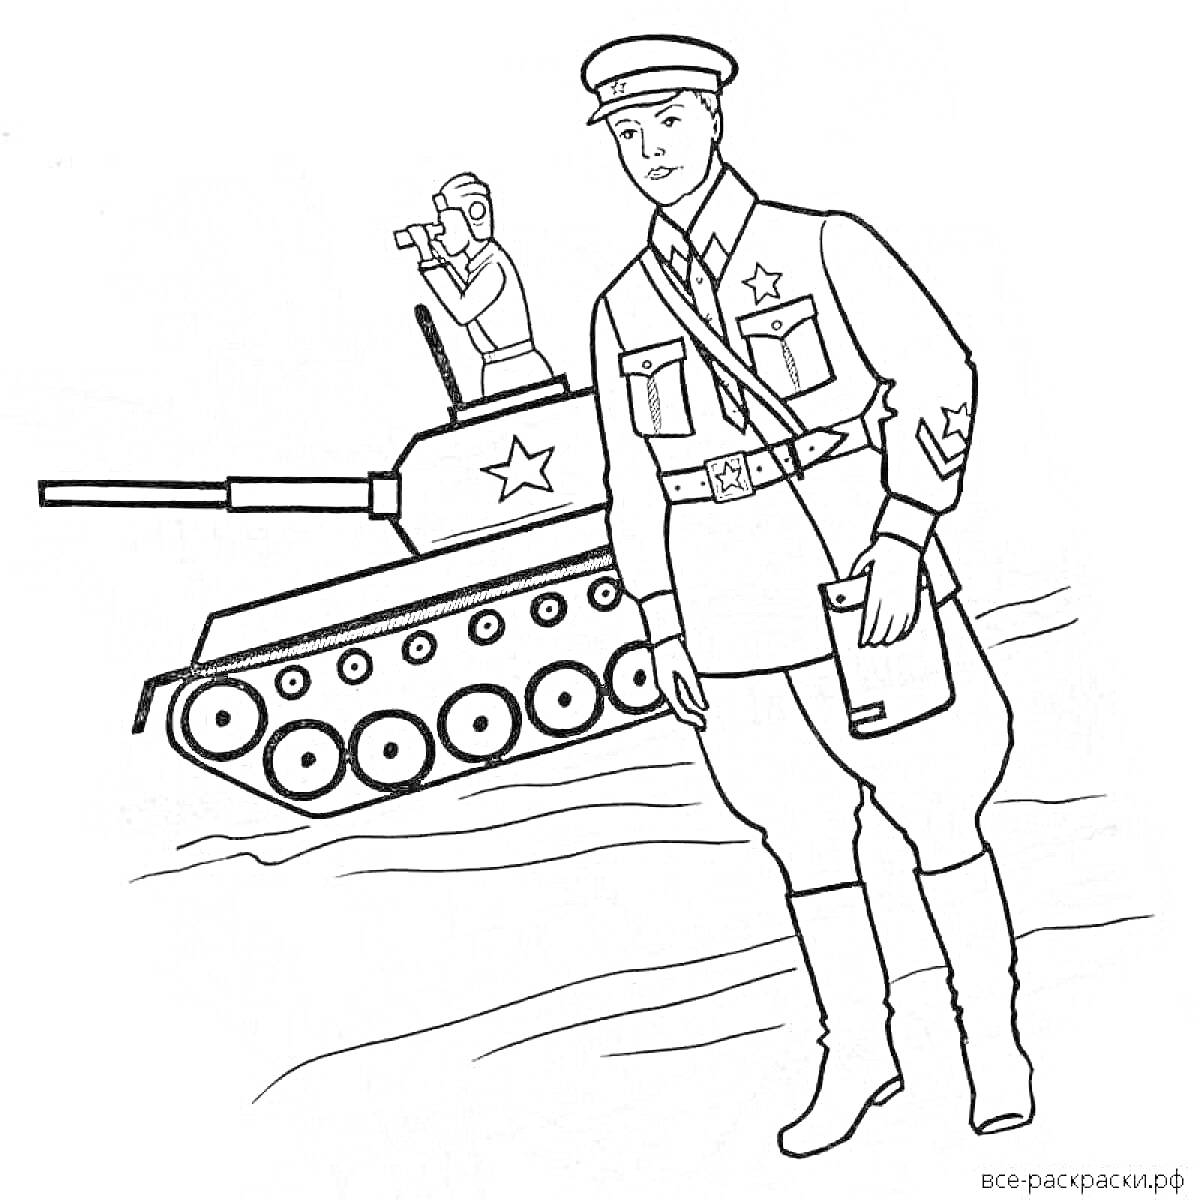 Солдат с документом на фоне танка с командиром